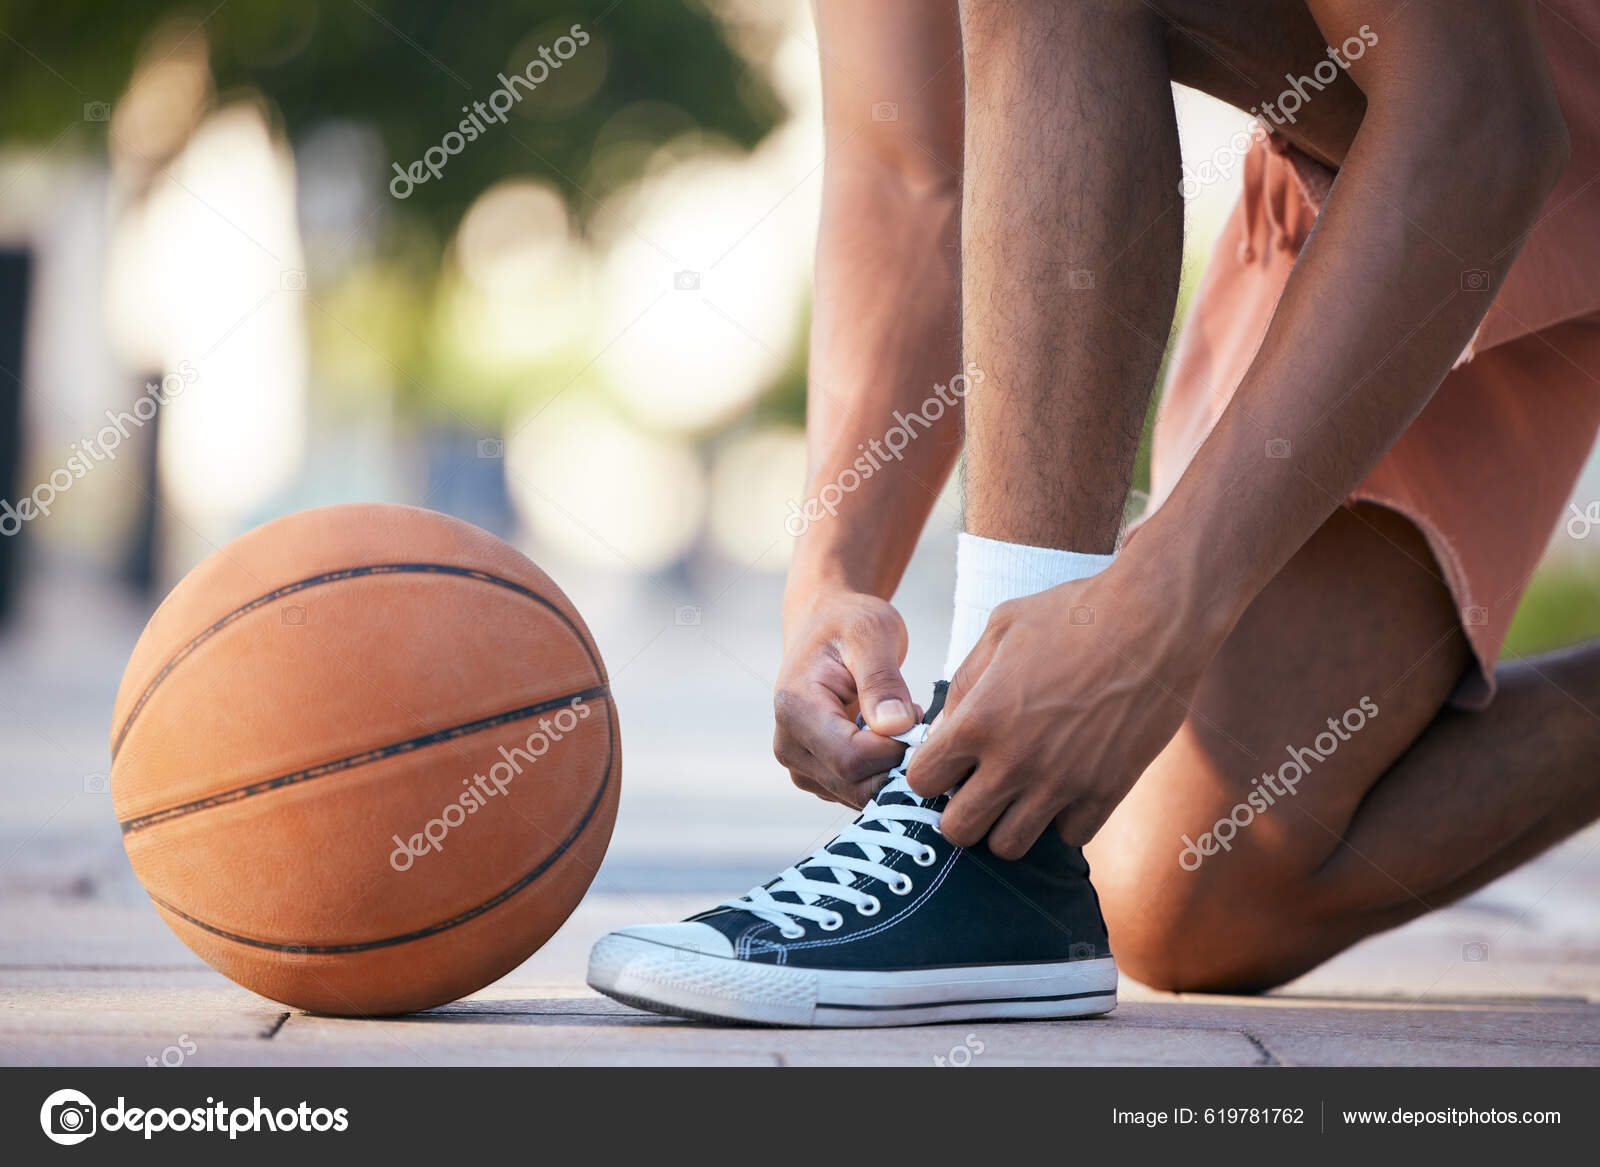 Händer Skor Och Basket Sportmotivation För Träning Träning Och Motion —  Stockfotografi © PeopleImages.com #619781762